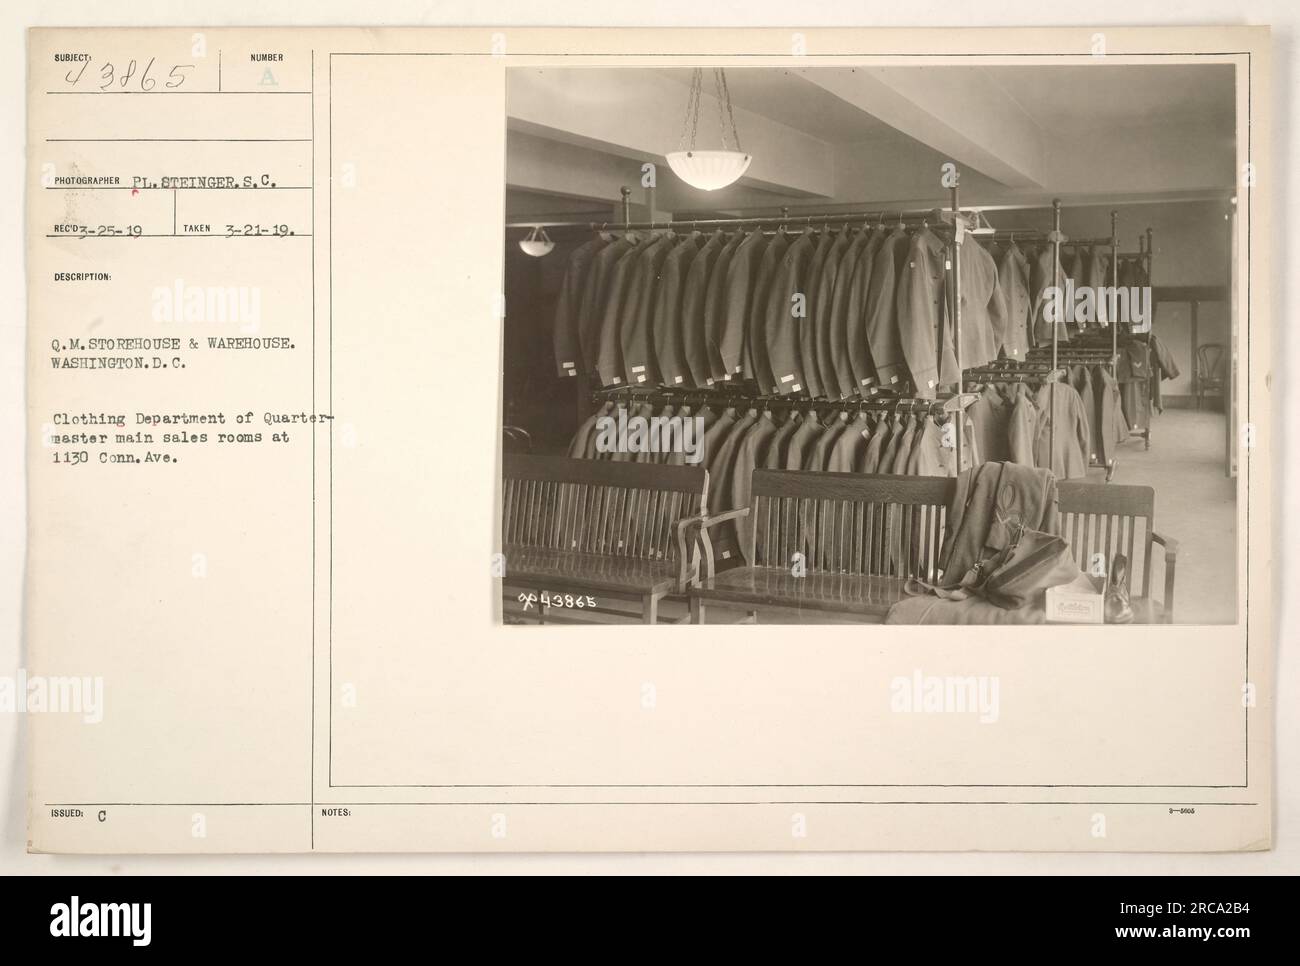 Département vêtements des salles de vente principales Quarter Master au 1130 Connecticut Ave à Washington, DC Cette image montre l'entrepôt Q.M. pendant la première Guerre mondiale. La photographie a été prise par le photographe PL. Steinger le 21 mars 1919 avec le numéro SC 43865. Banque D'Images